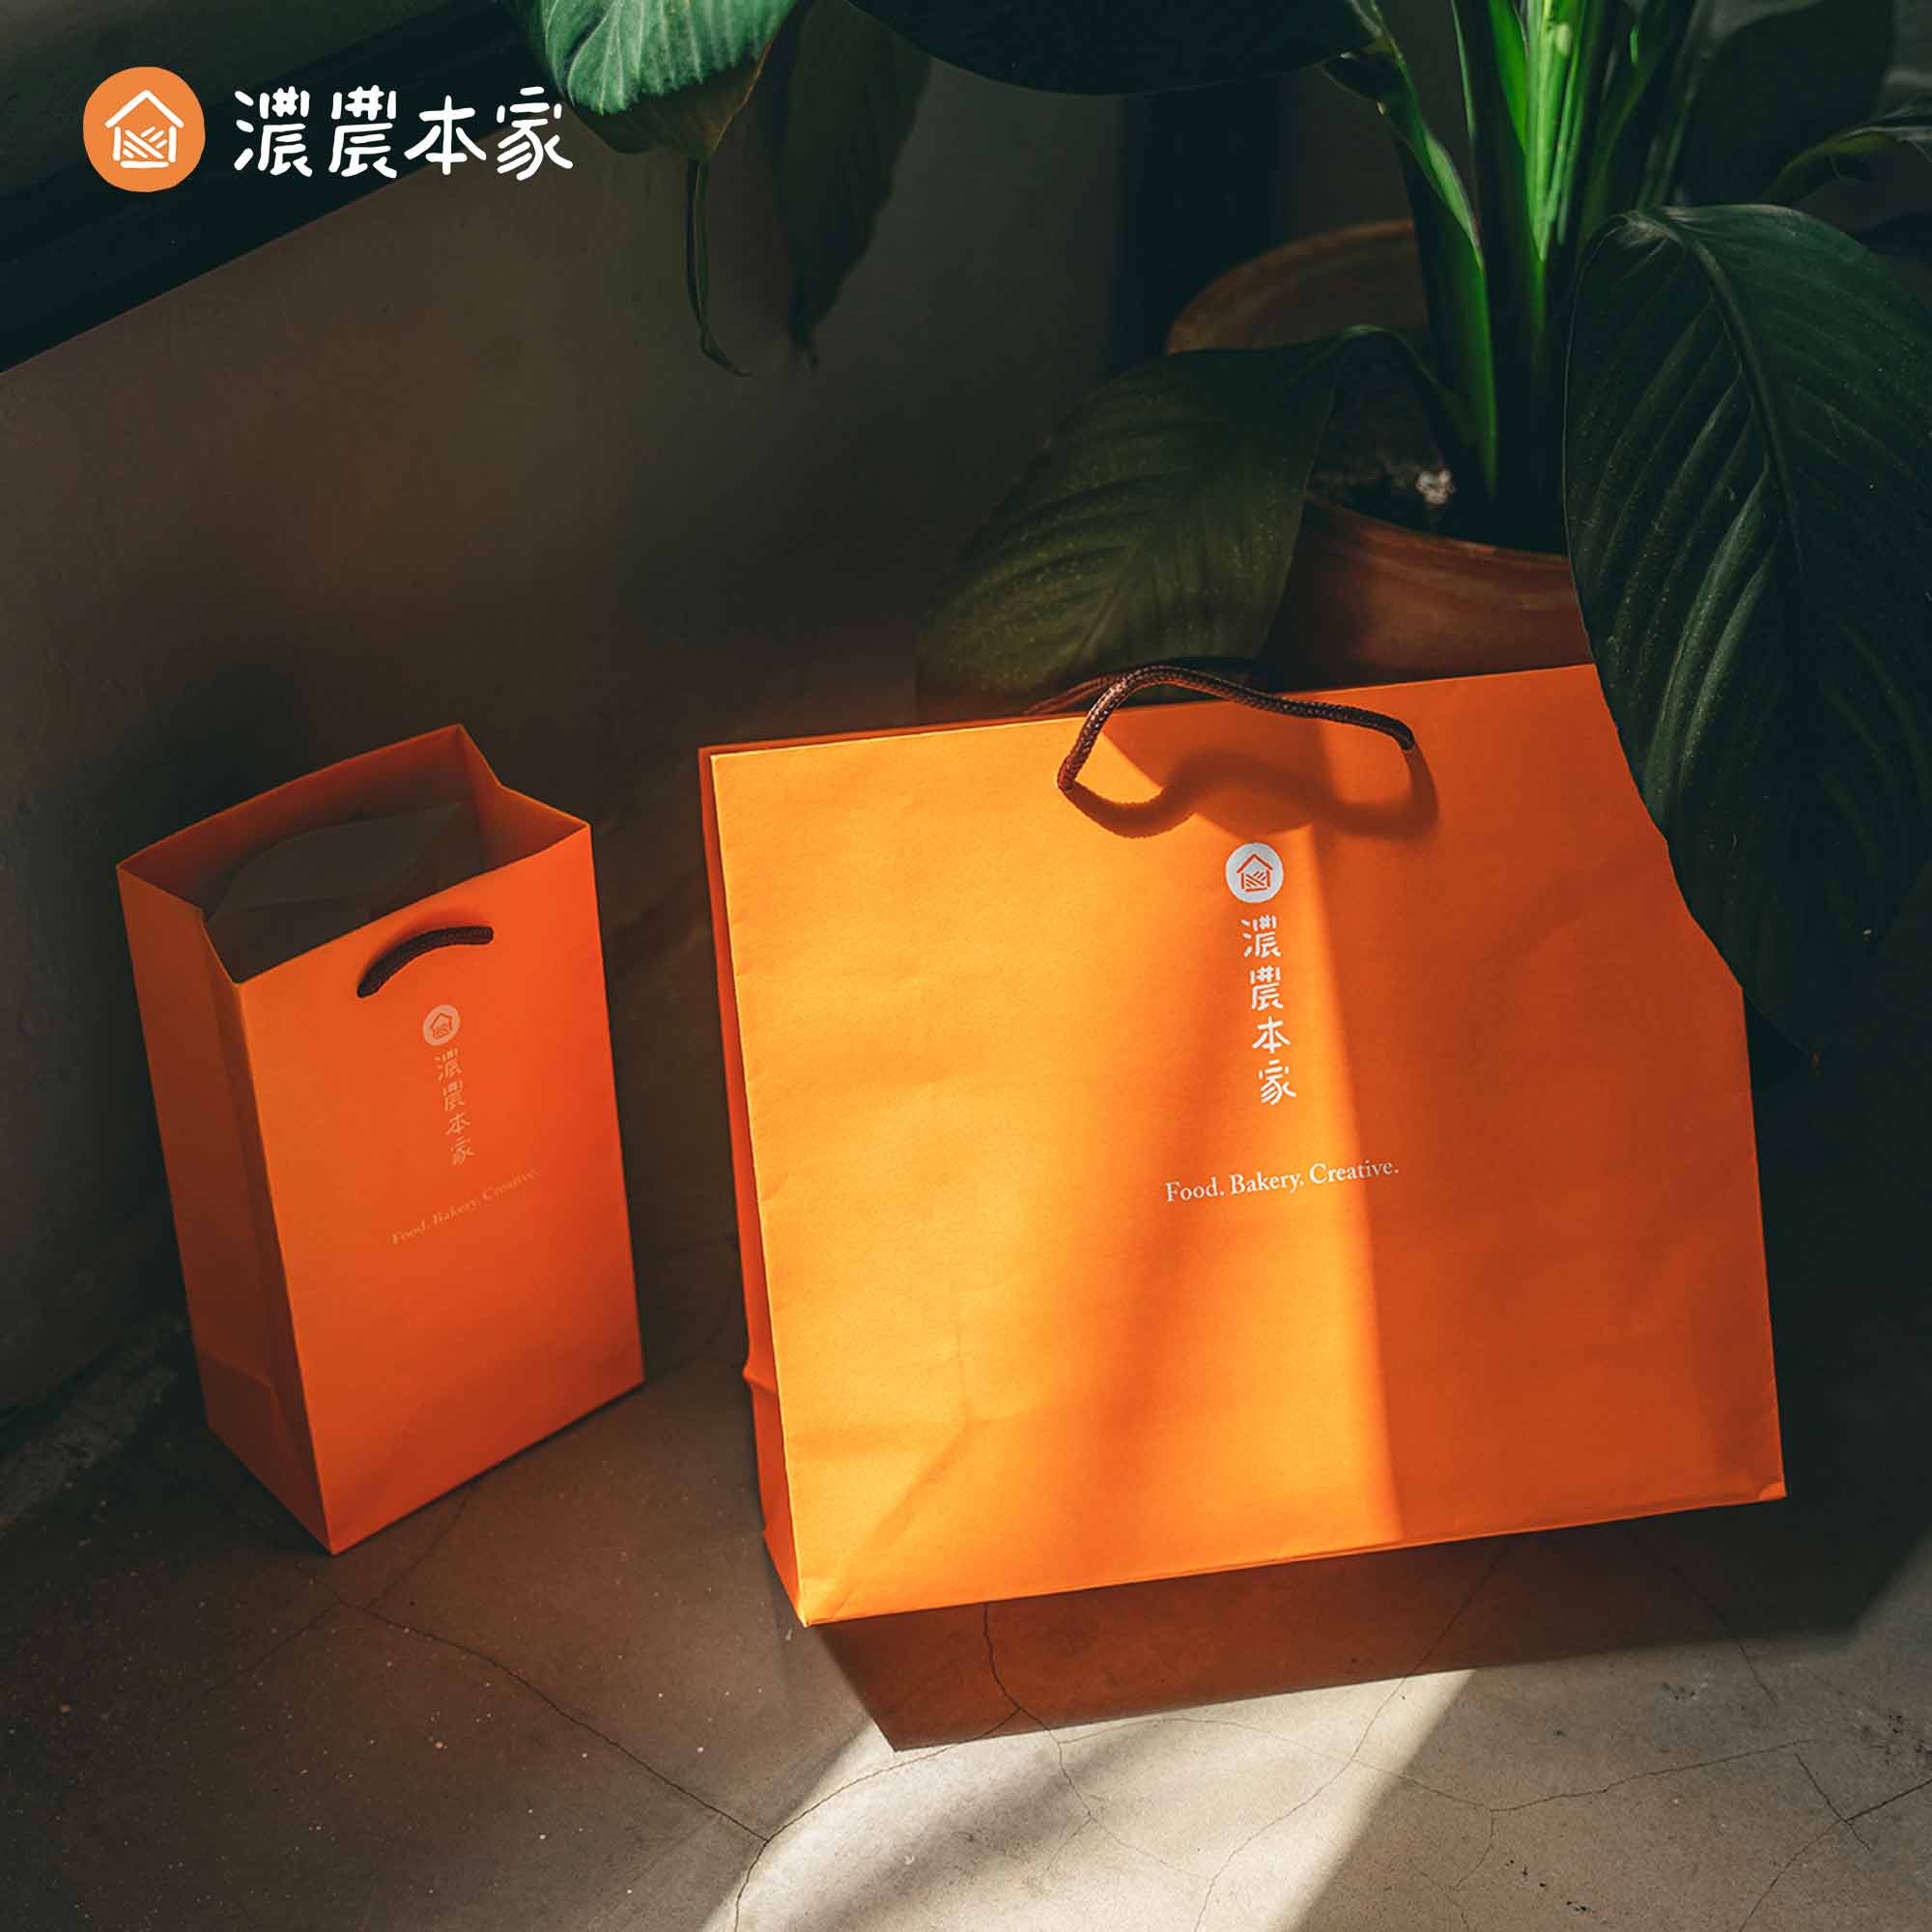 【回國禮物】代表台灣特色的小禮物推薦！送禮給外國人肯定超喜歡！